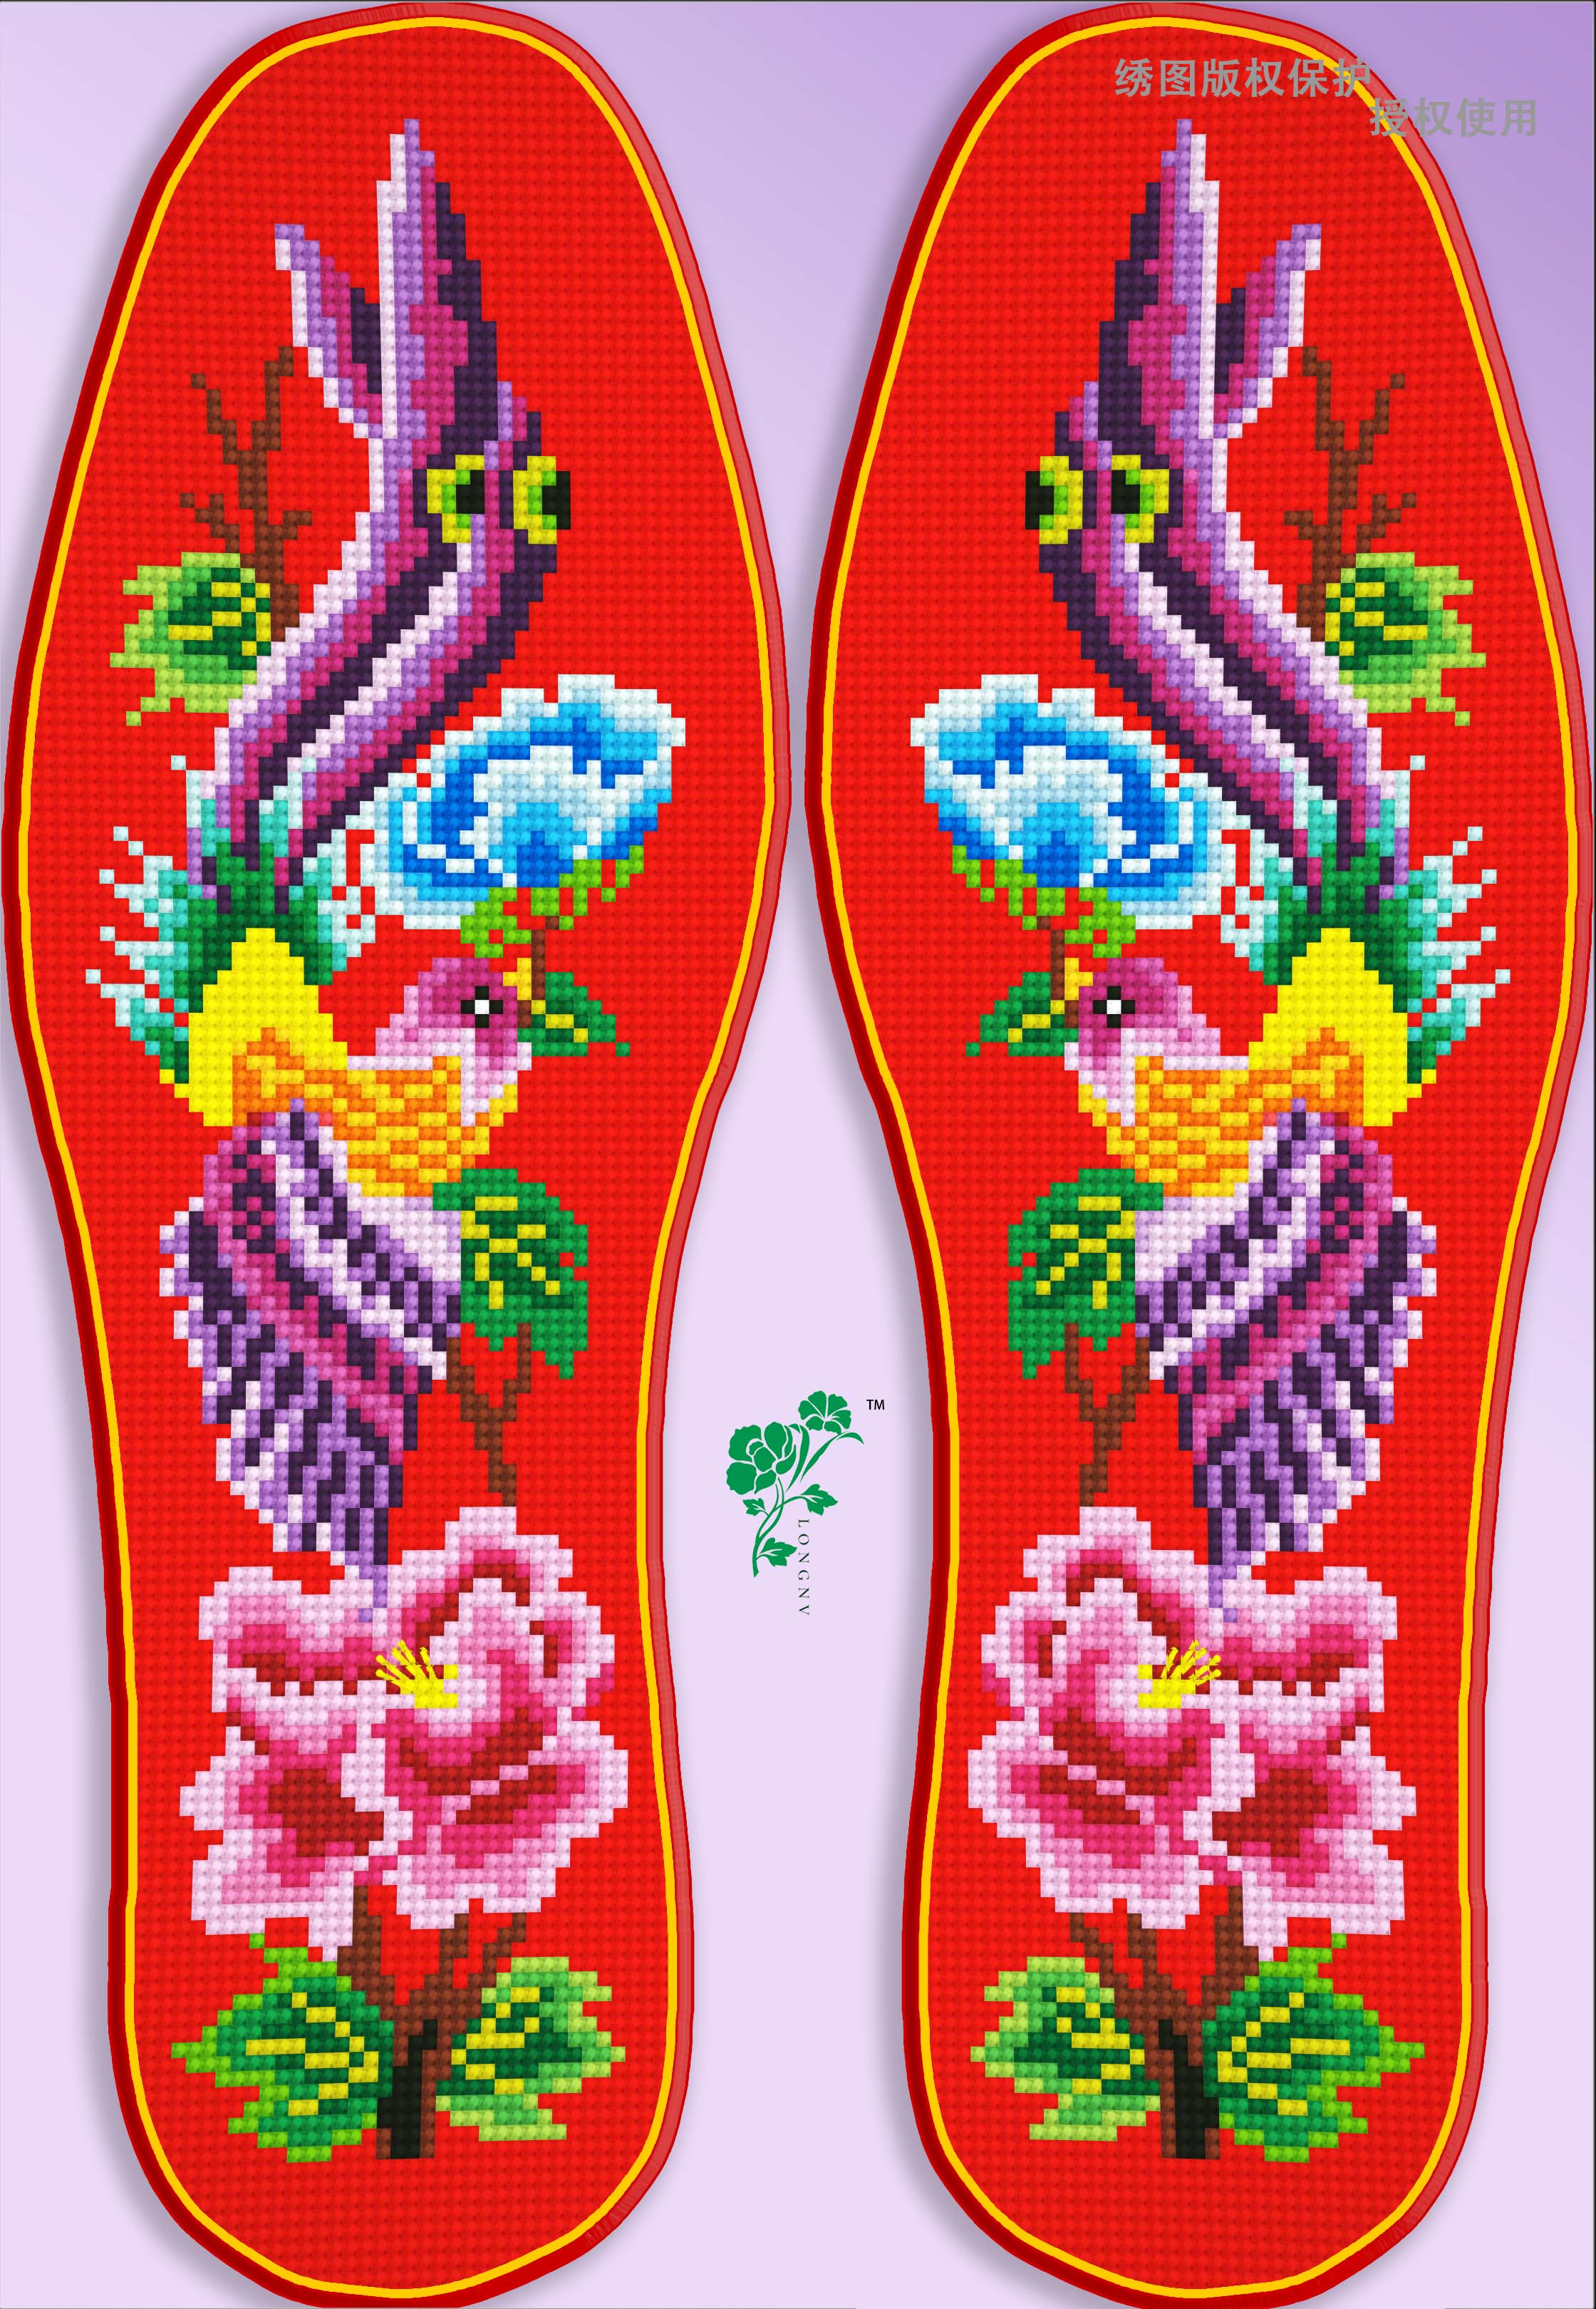 小格十字绣鞋垫图样,紫凤凰和金凤凰!